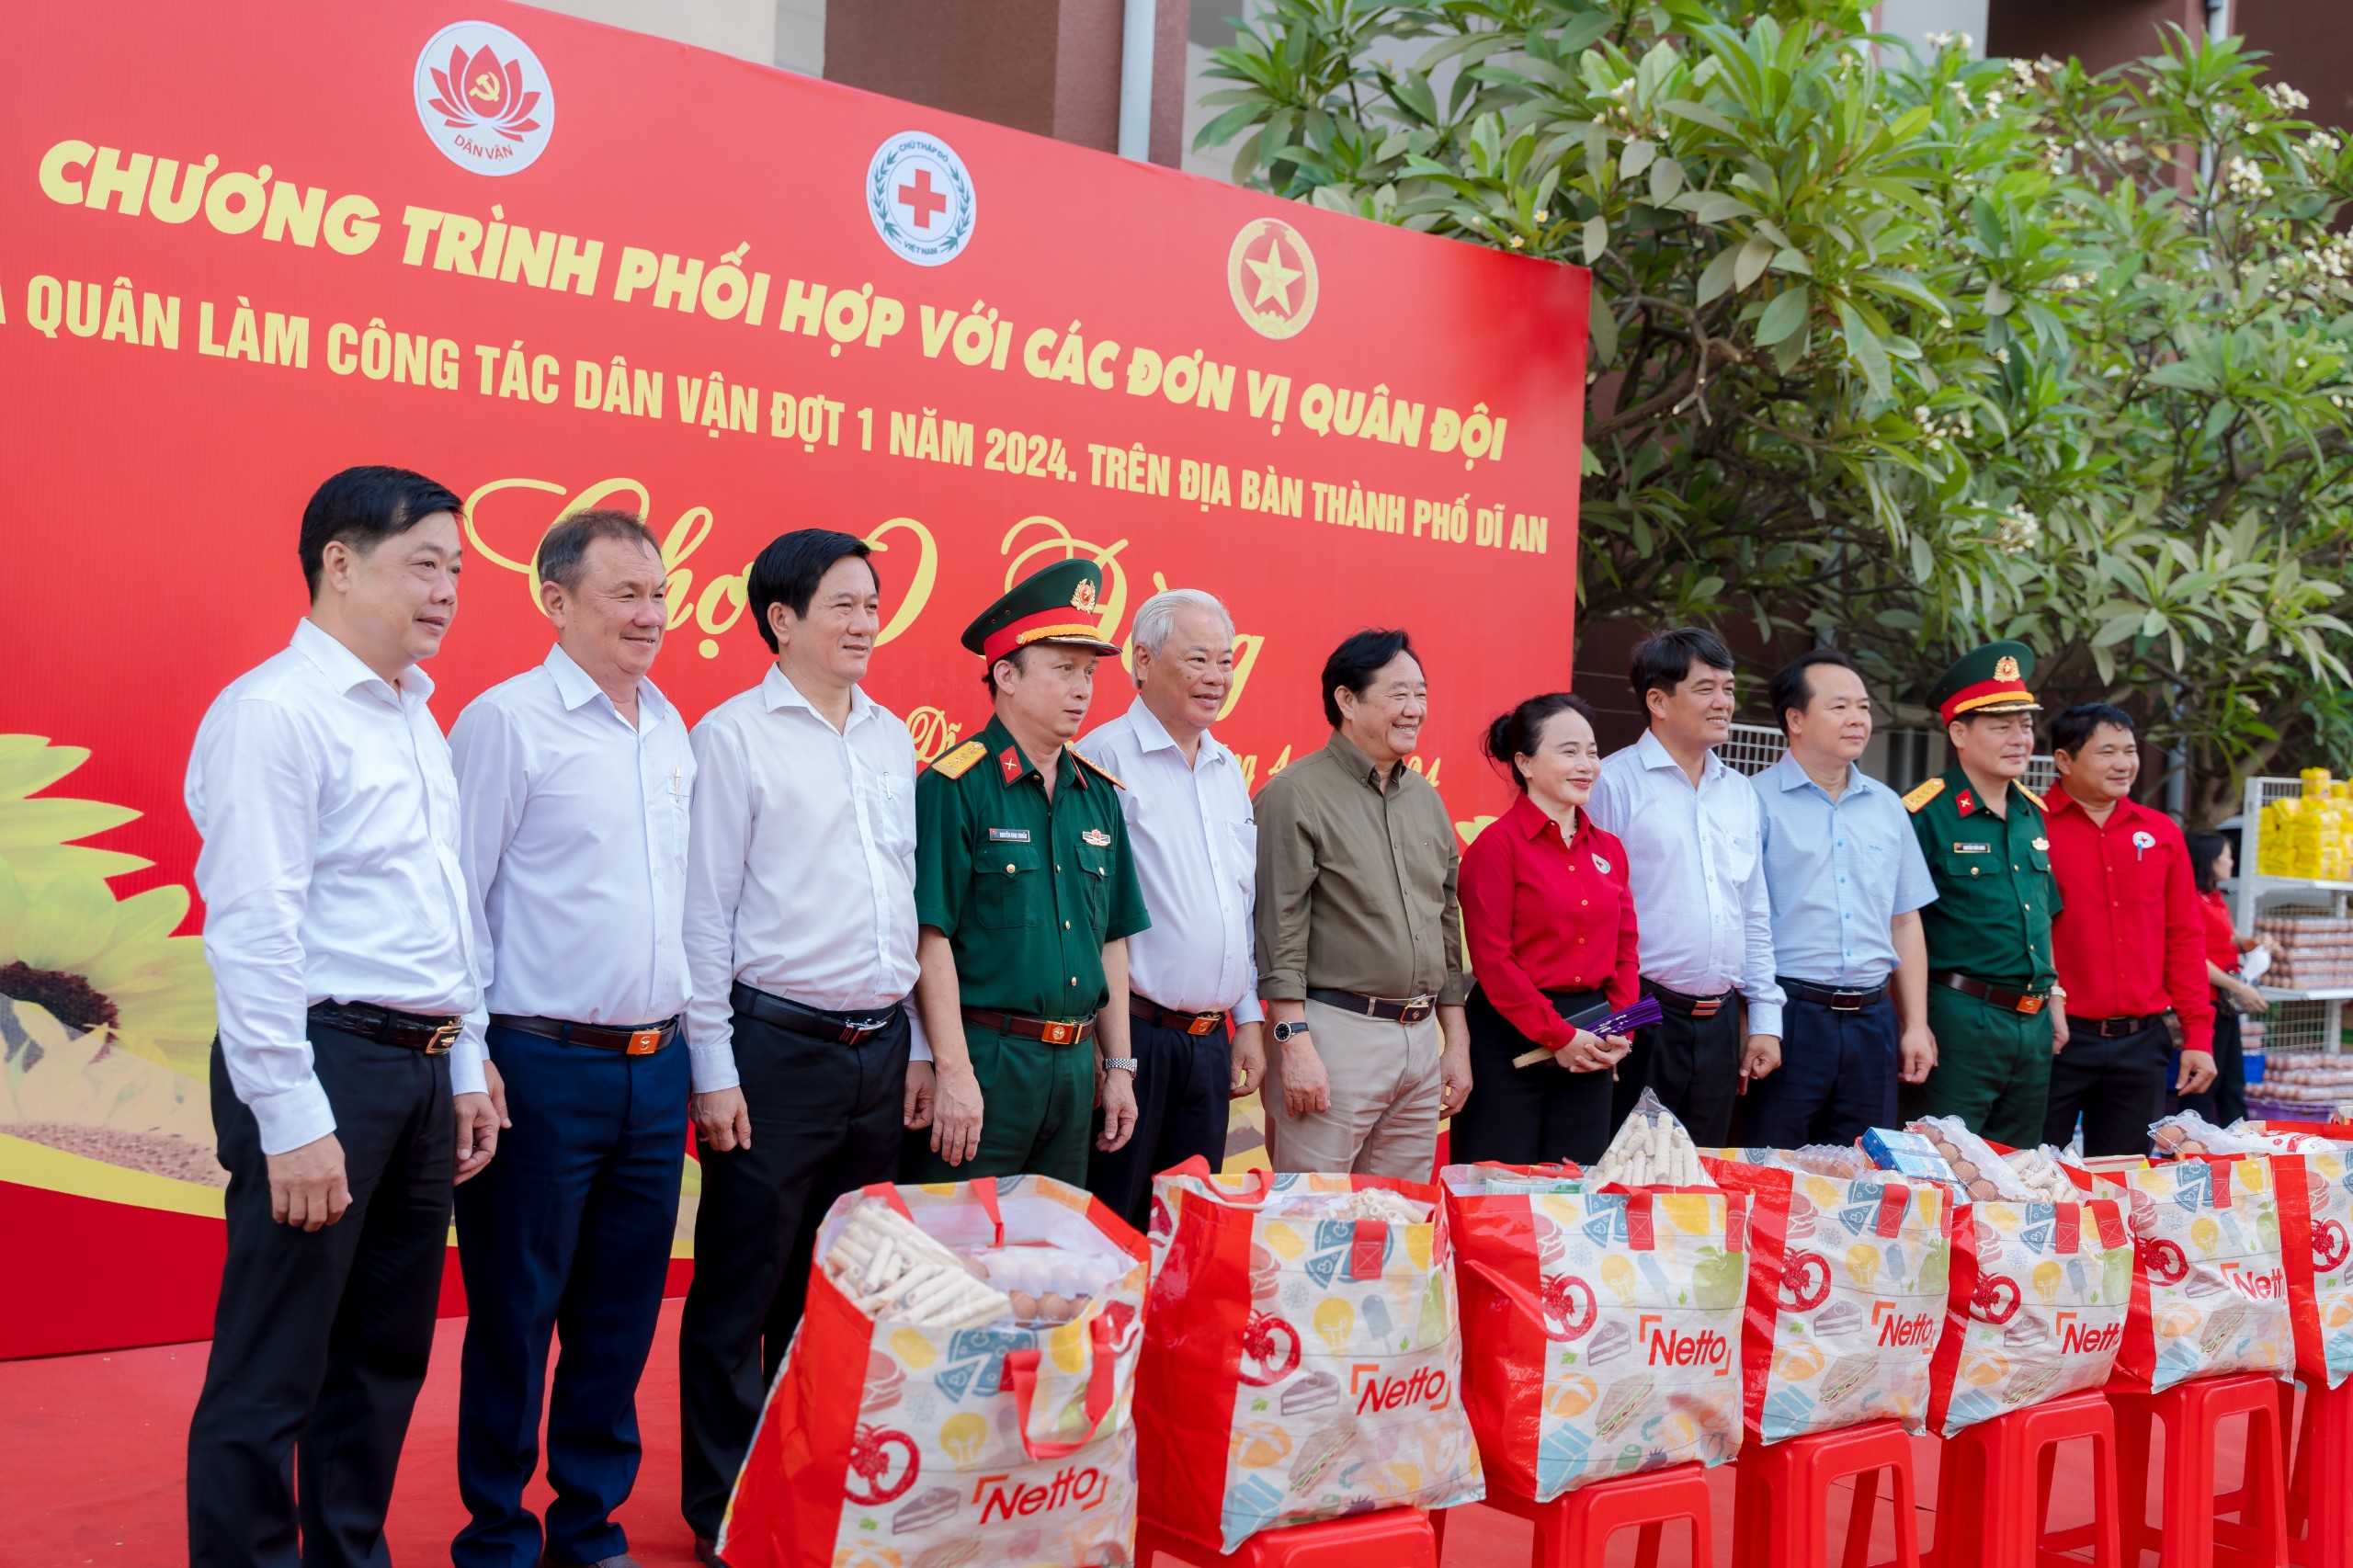 Đồng chí Nguyễn Hoàng Thao - Phó Bí thư Thường trực Tỉnh ủy Bình Dương tặng quà cho người dân khó khăn, gia đình chính sách.